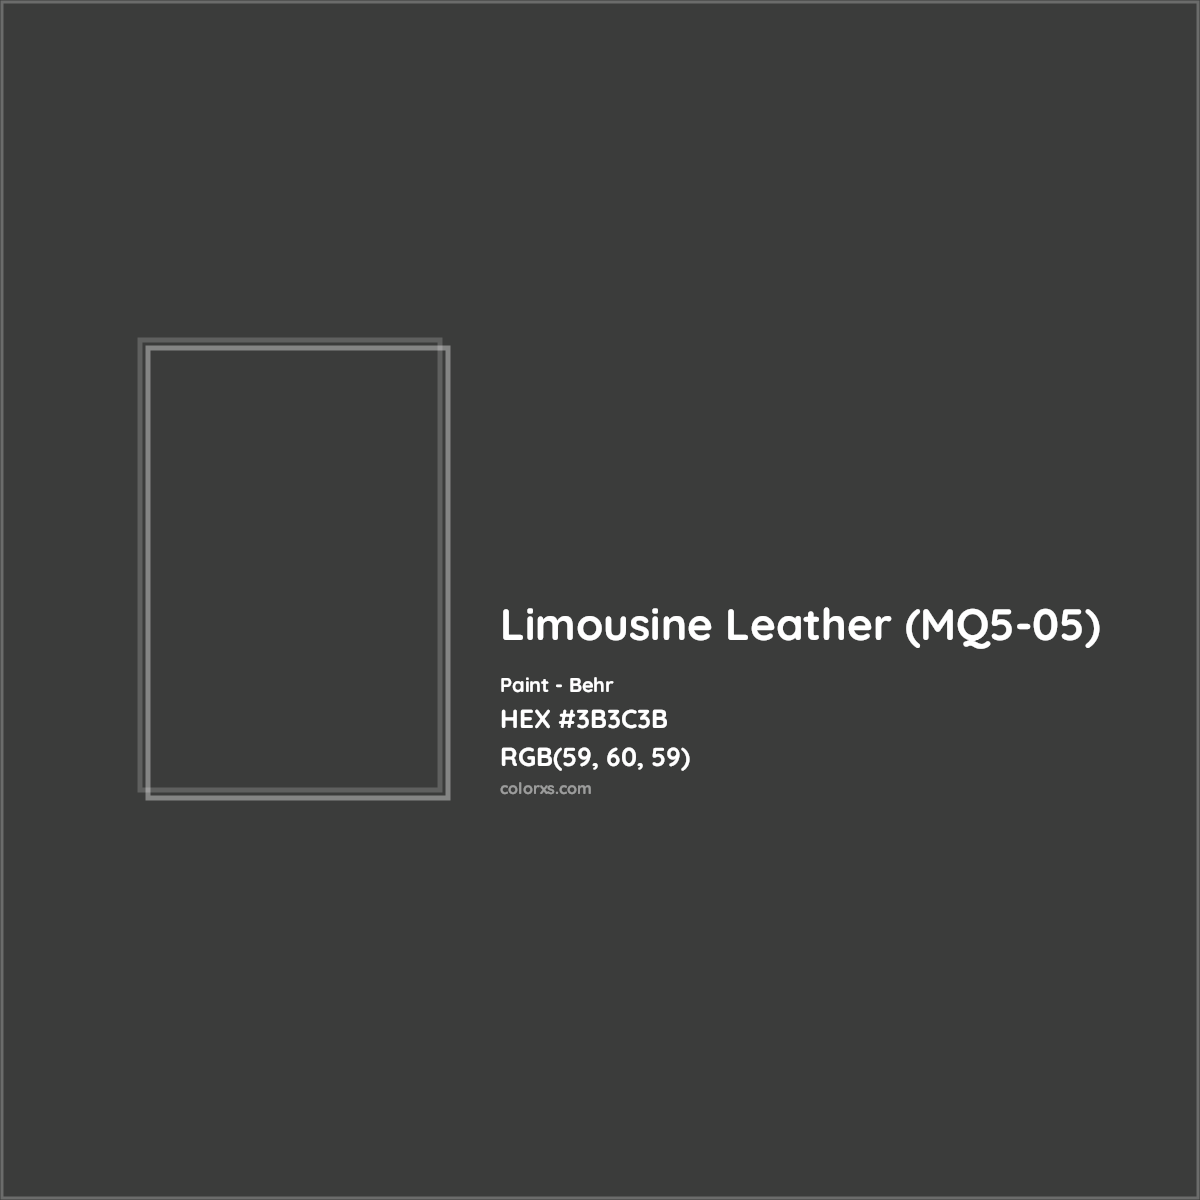 HEX #3B3C3B Limousine Leather (MQ5-05) Paint Behr - Color Code